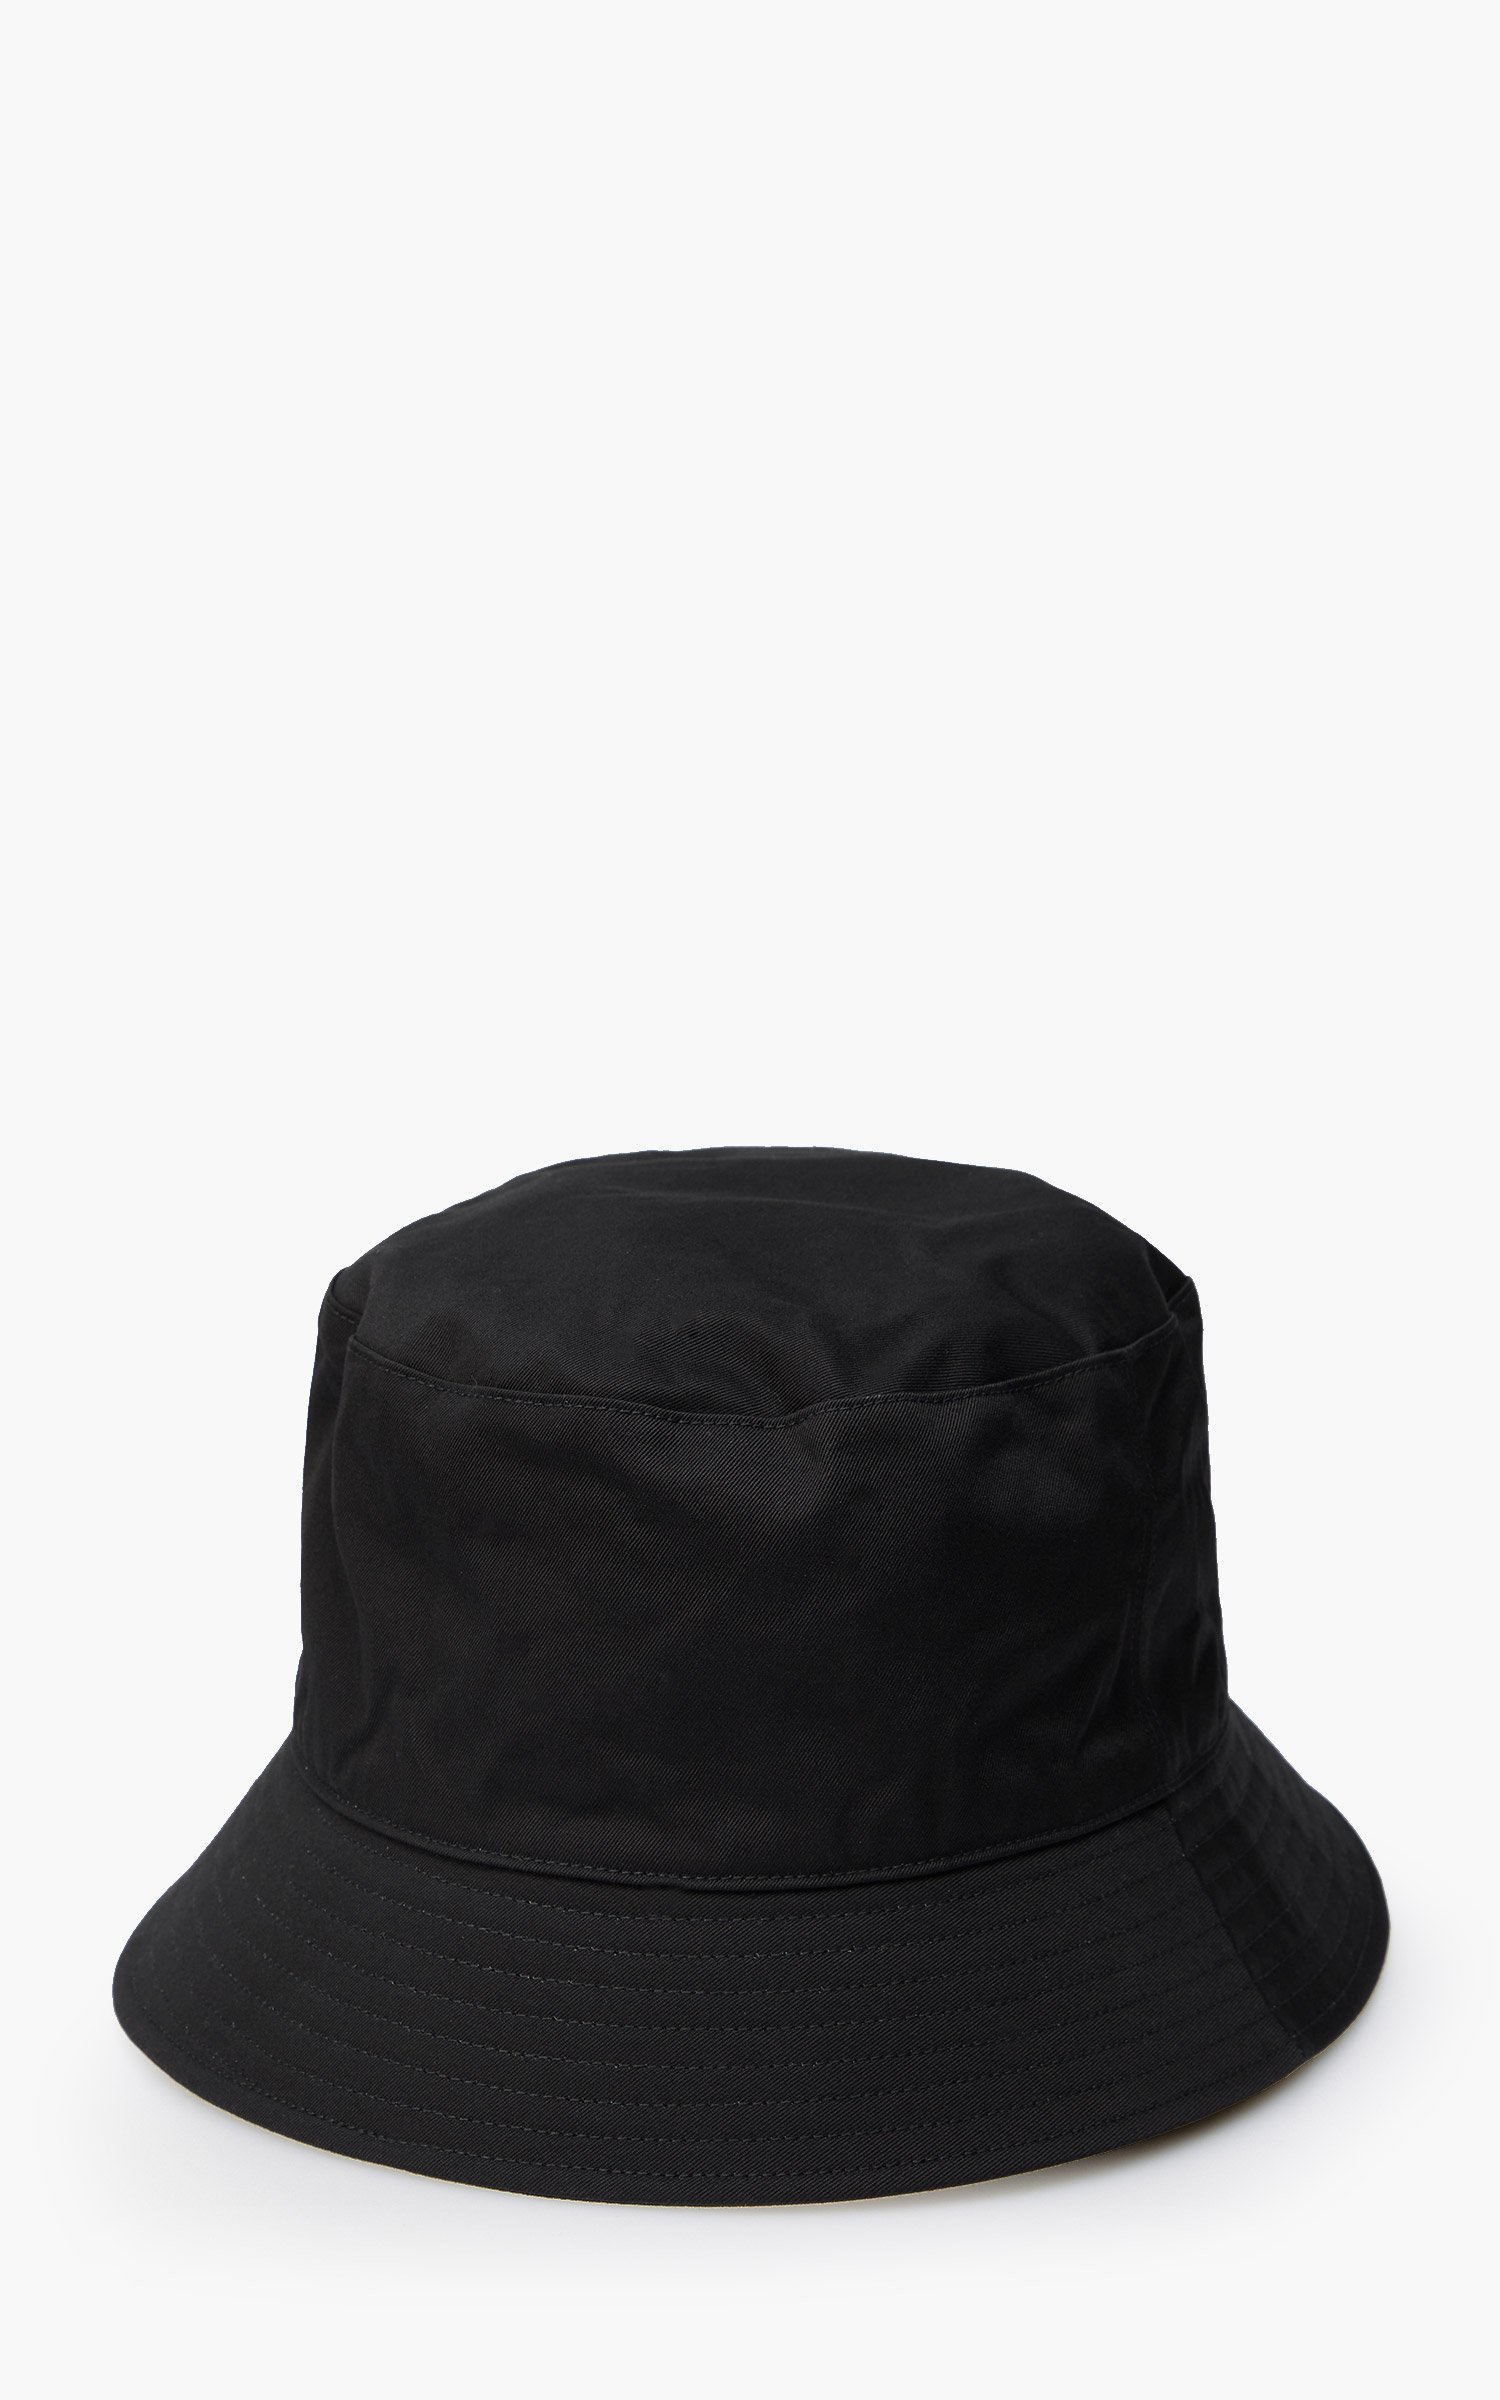 ブラック系全ての Kijima Takayuki-bucket hat ハット 帽子ブラック系 